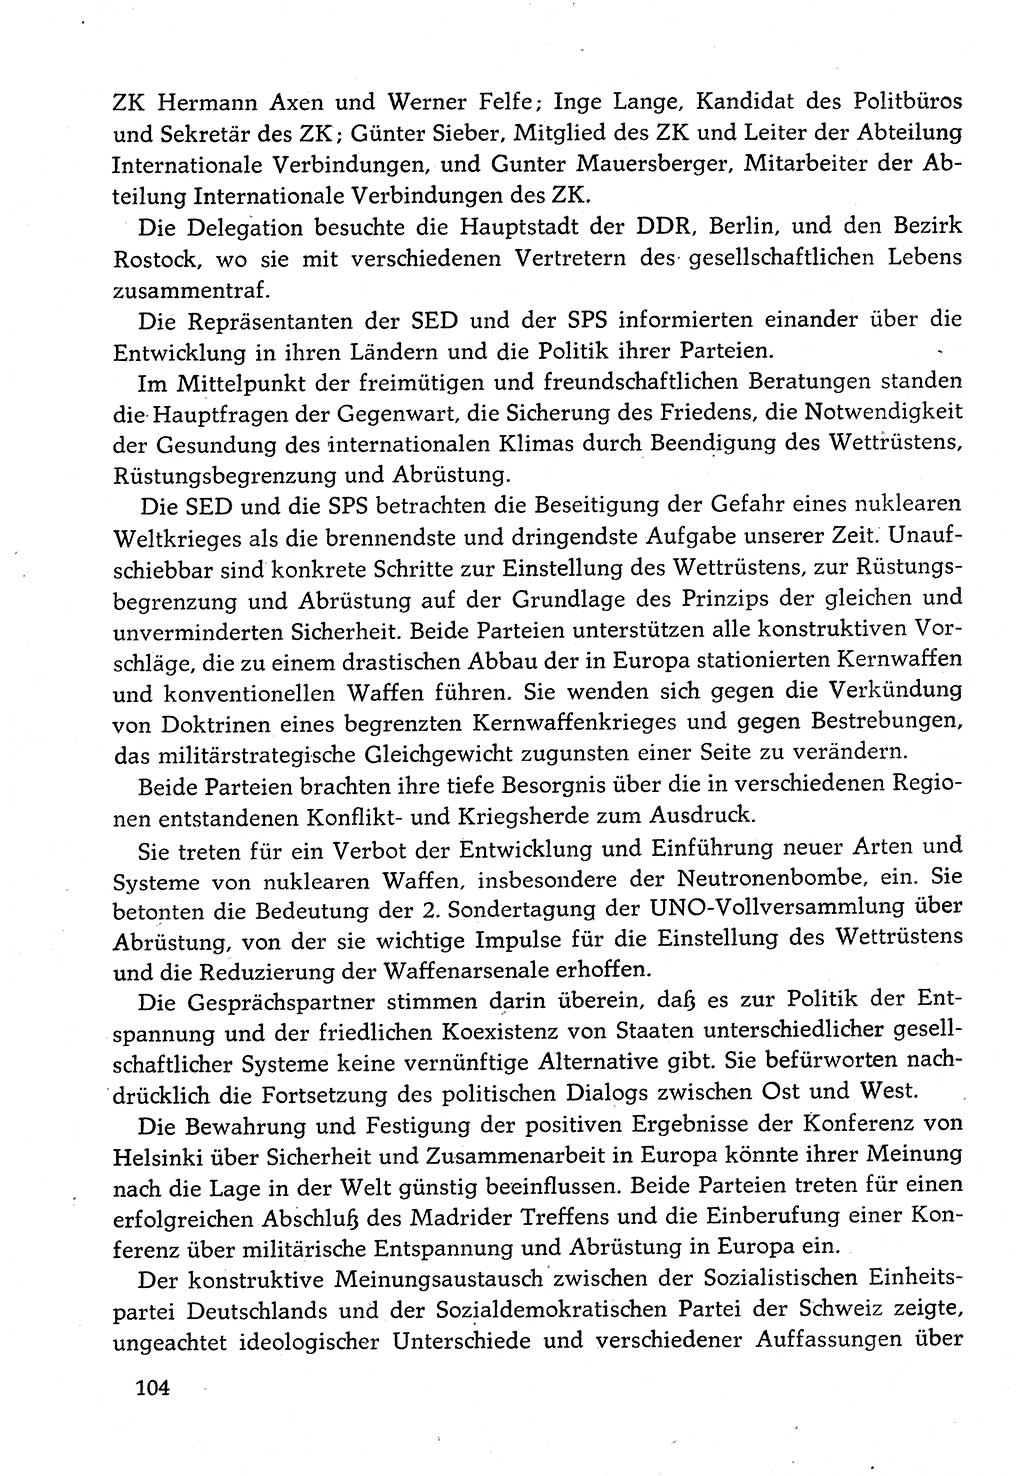 Dokumente der Sozialistischen Einheitspartei Deutschlands (SED) [Deutsche Demokratische Republik (DDR)] 1982-1983, Seite 104 (Dok. SED DDR 1982-1983, S. 104)